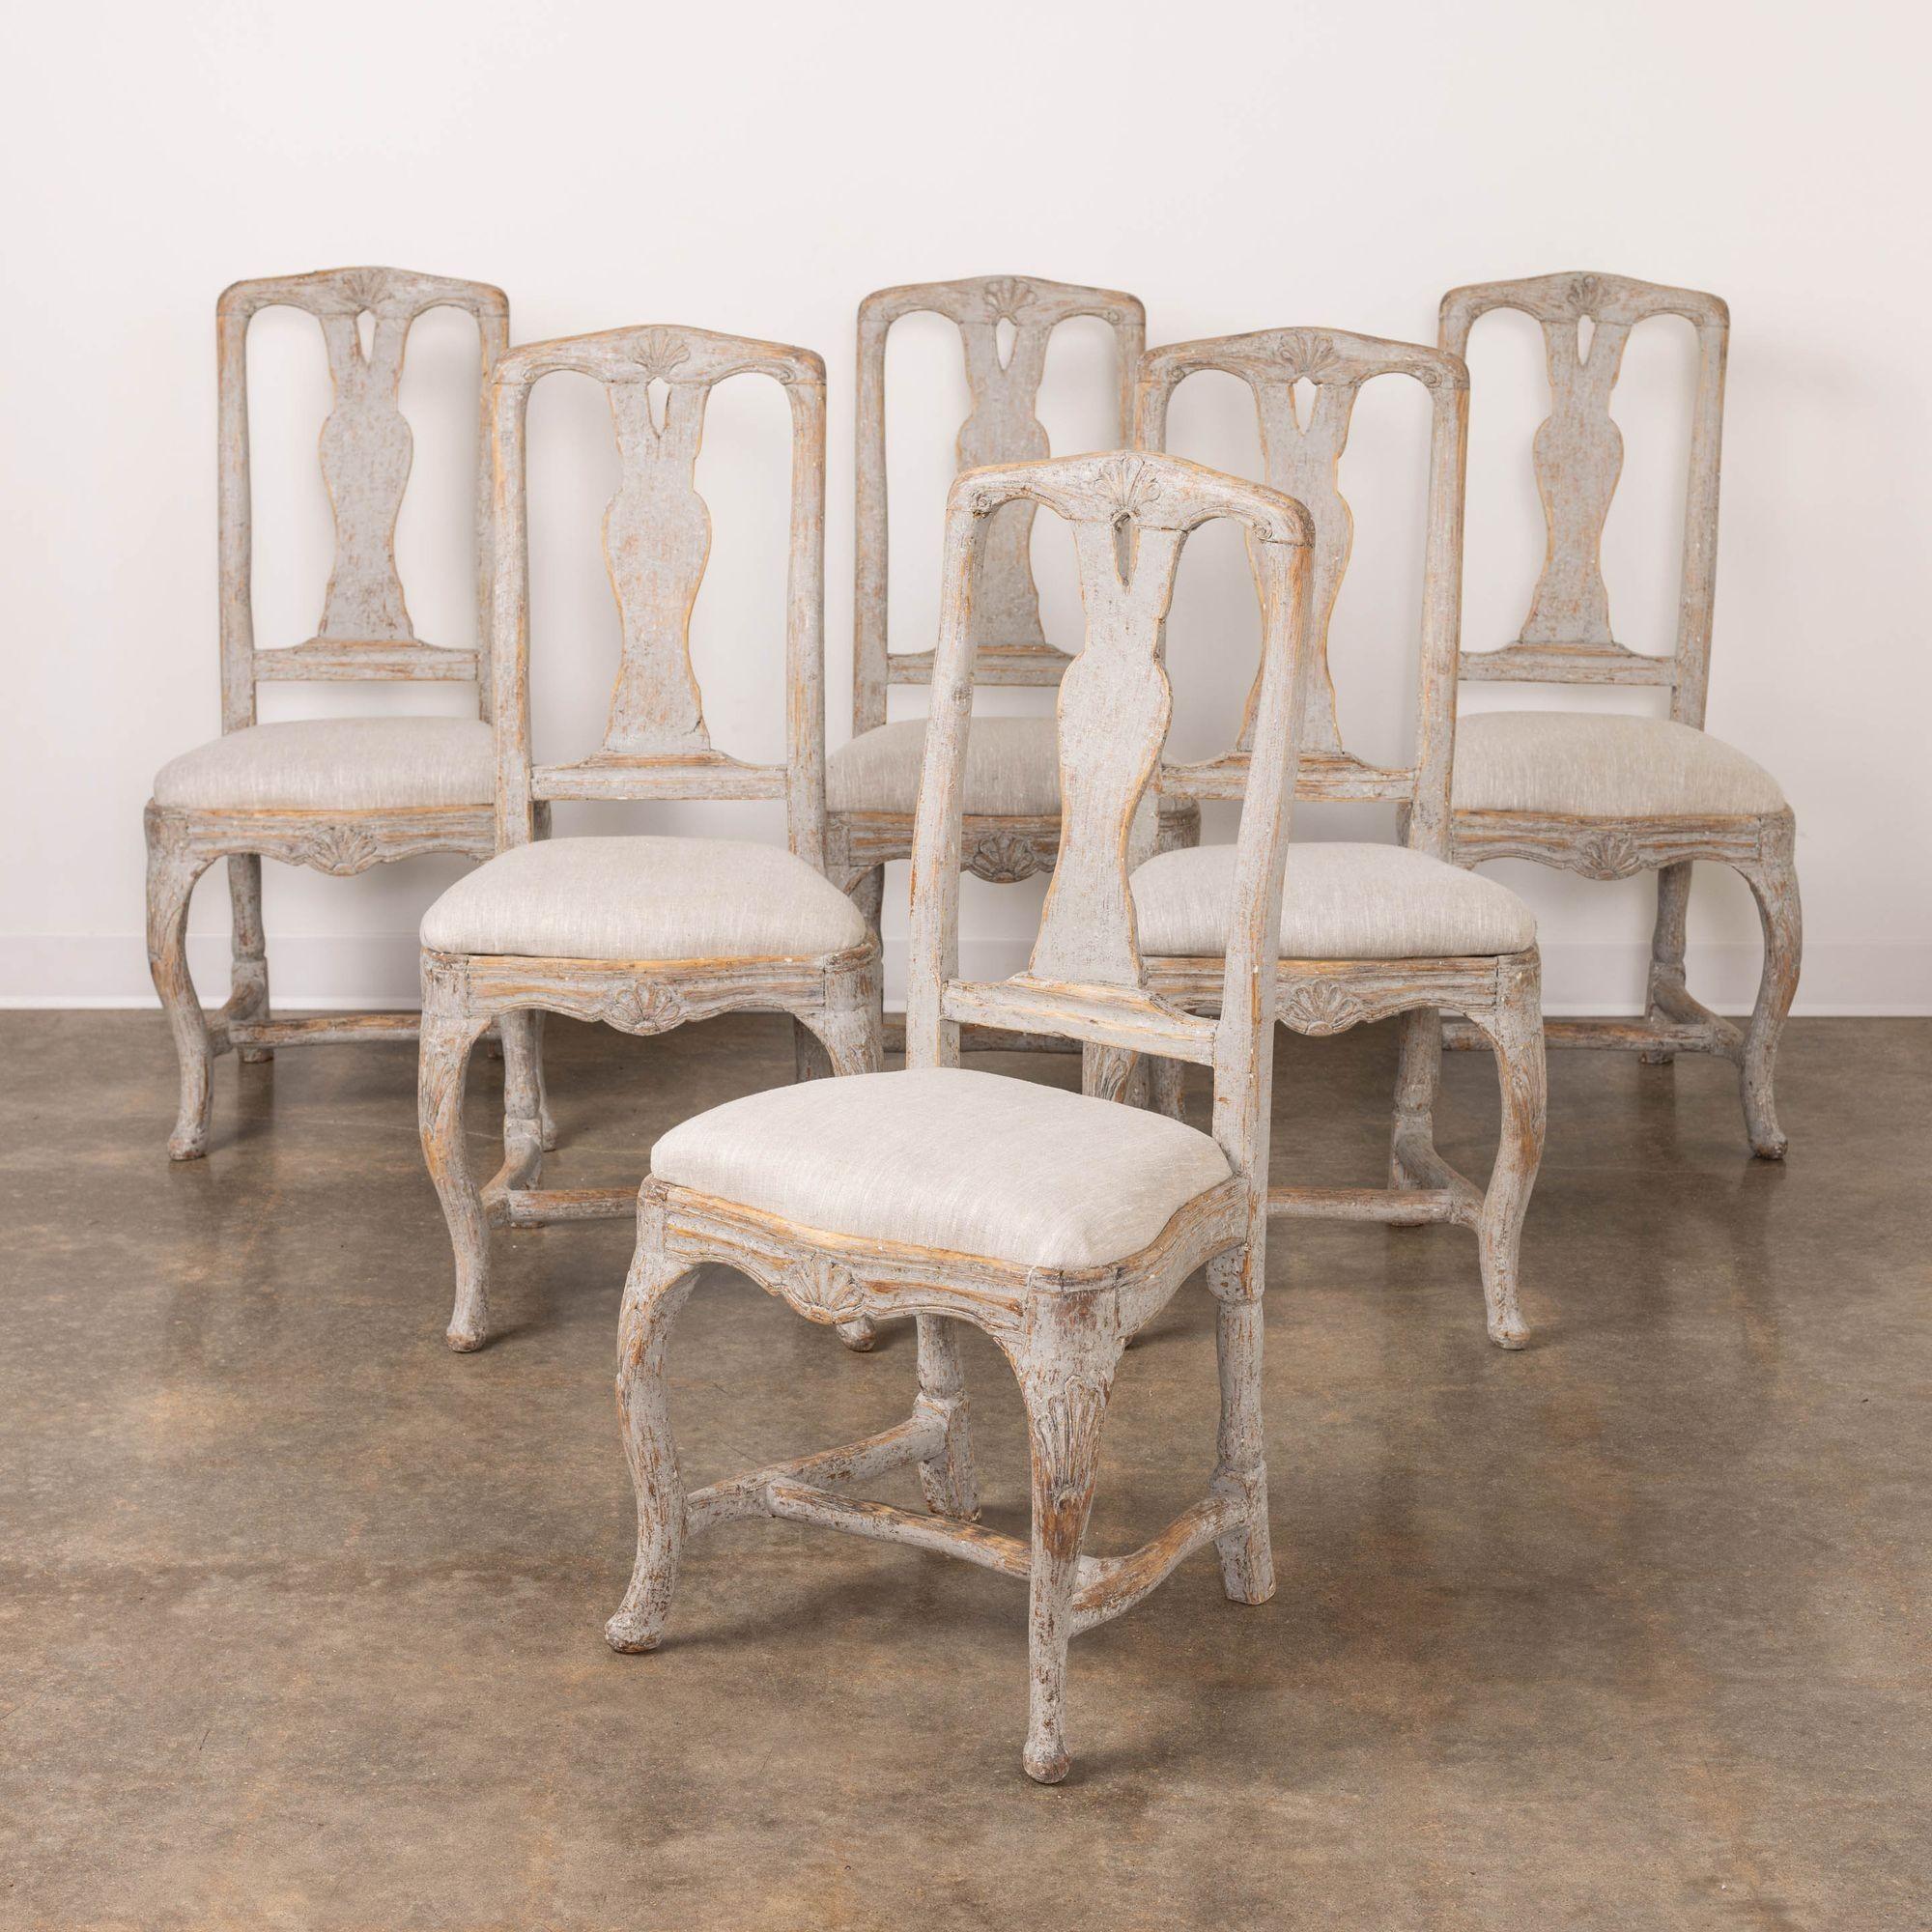 Très bel ensemble de six chaises de salle à manger suédoises de la période rococo, nouvellement tapissées de lin, avec des dossiers à cannelures percées, des motifs de coquillages sur les dossiers, les cadres d'assise et les pieds, une barre